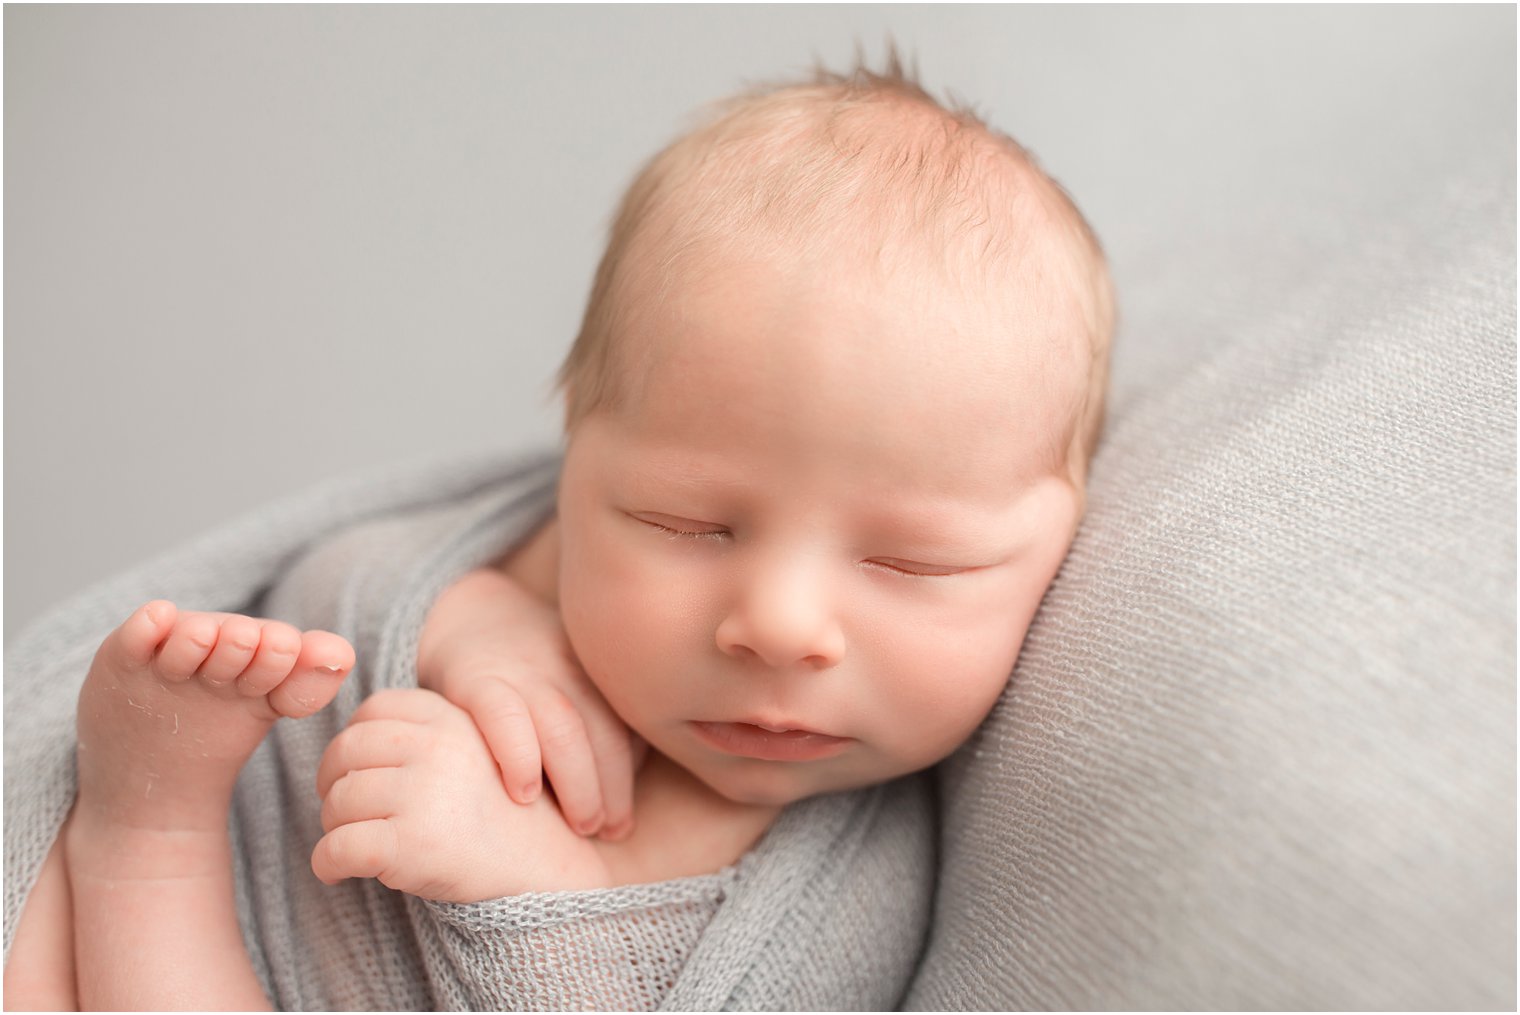 Sleepy newborn during newborn photo shoot | Red Bank NJ Newborn Photography by Idalia Photography